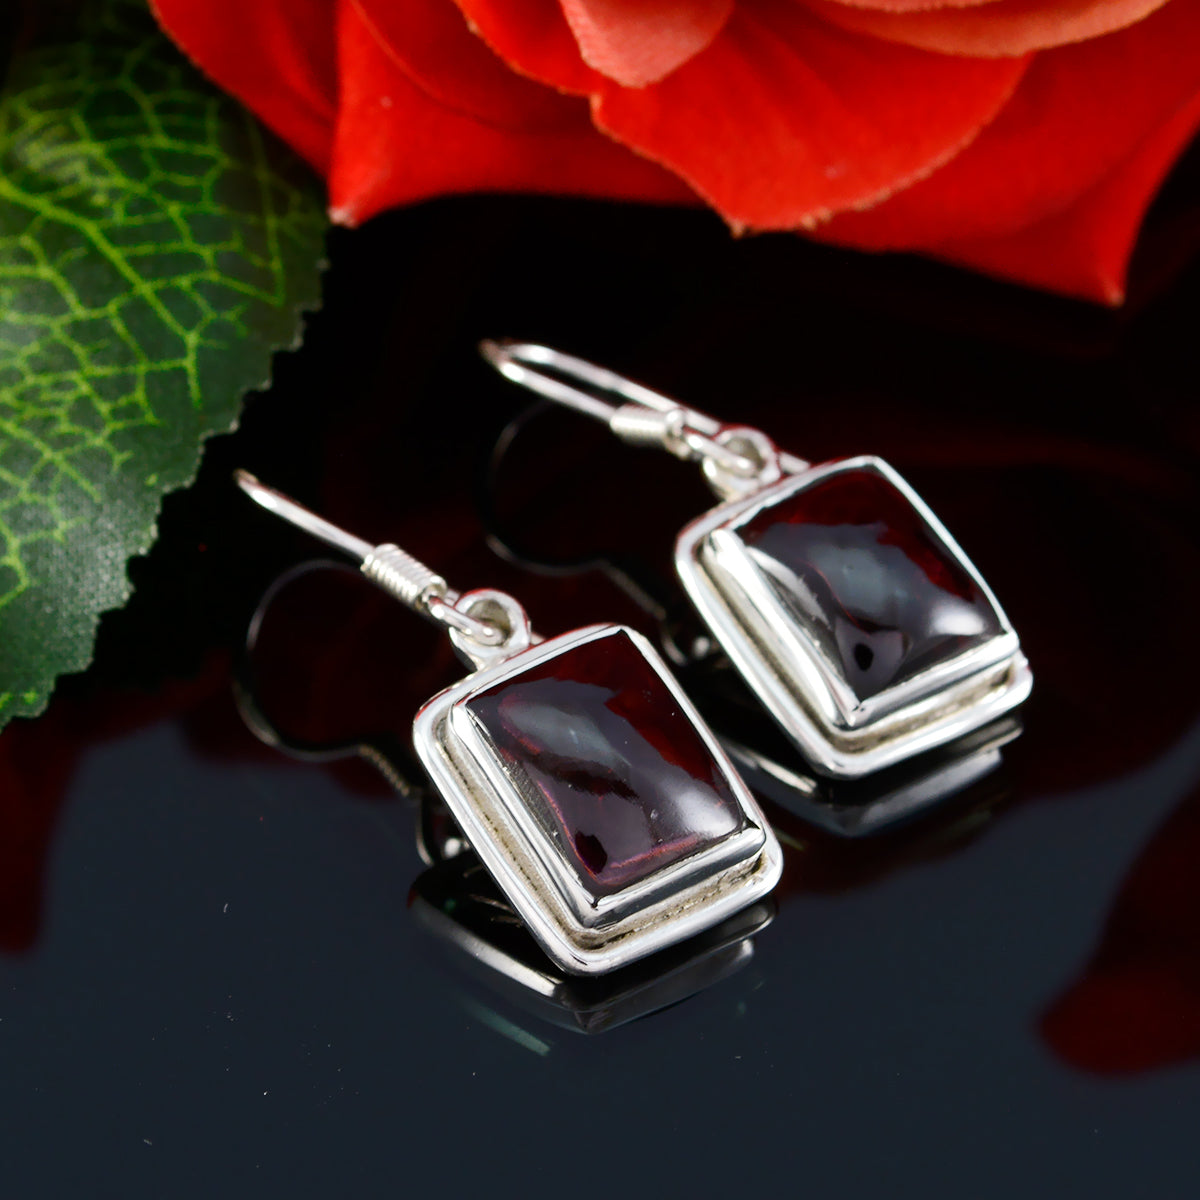 Riyo Genuine Gems Octogon Cabochon Red Garnet Silver Earring gift for good